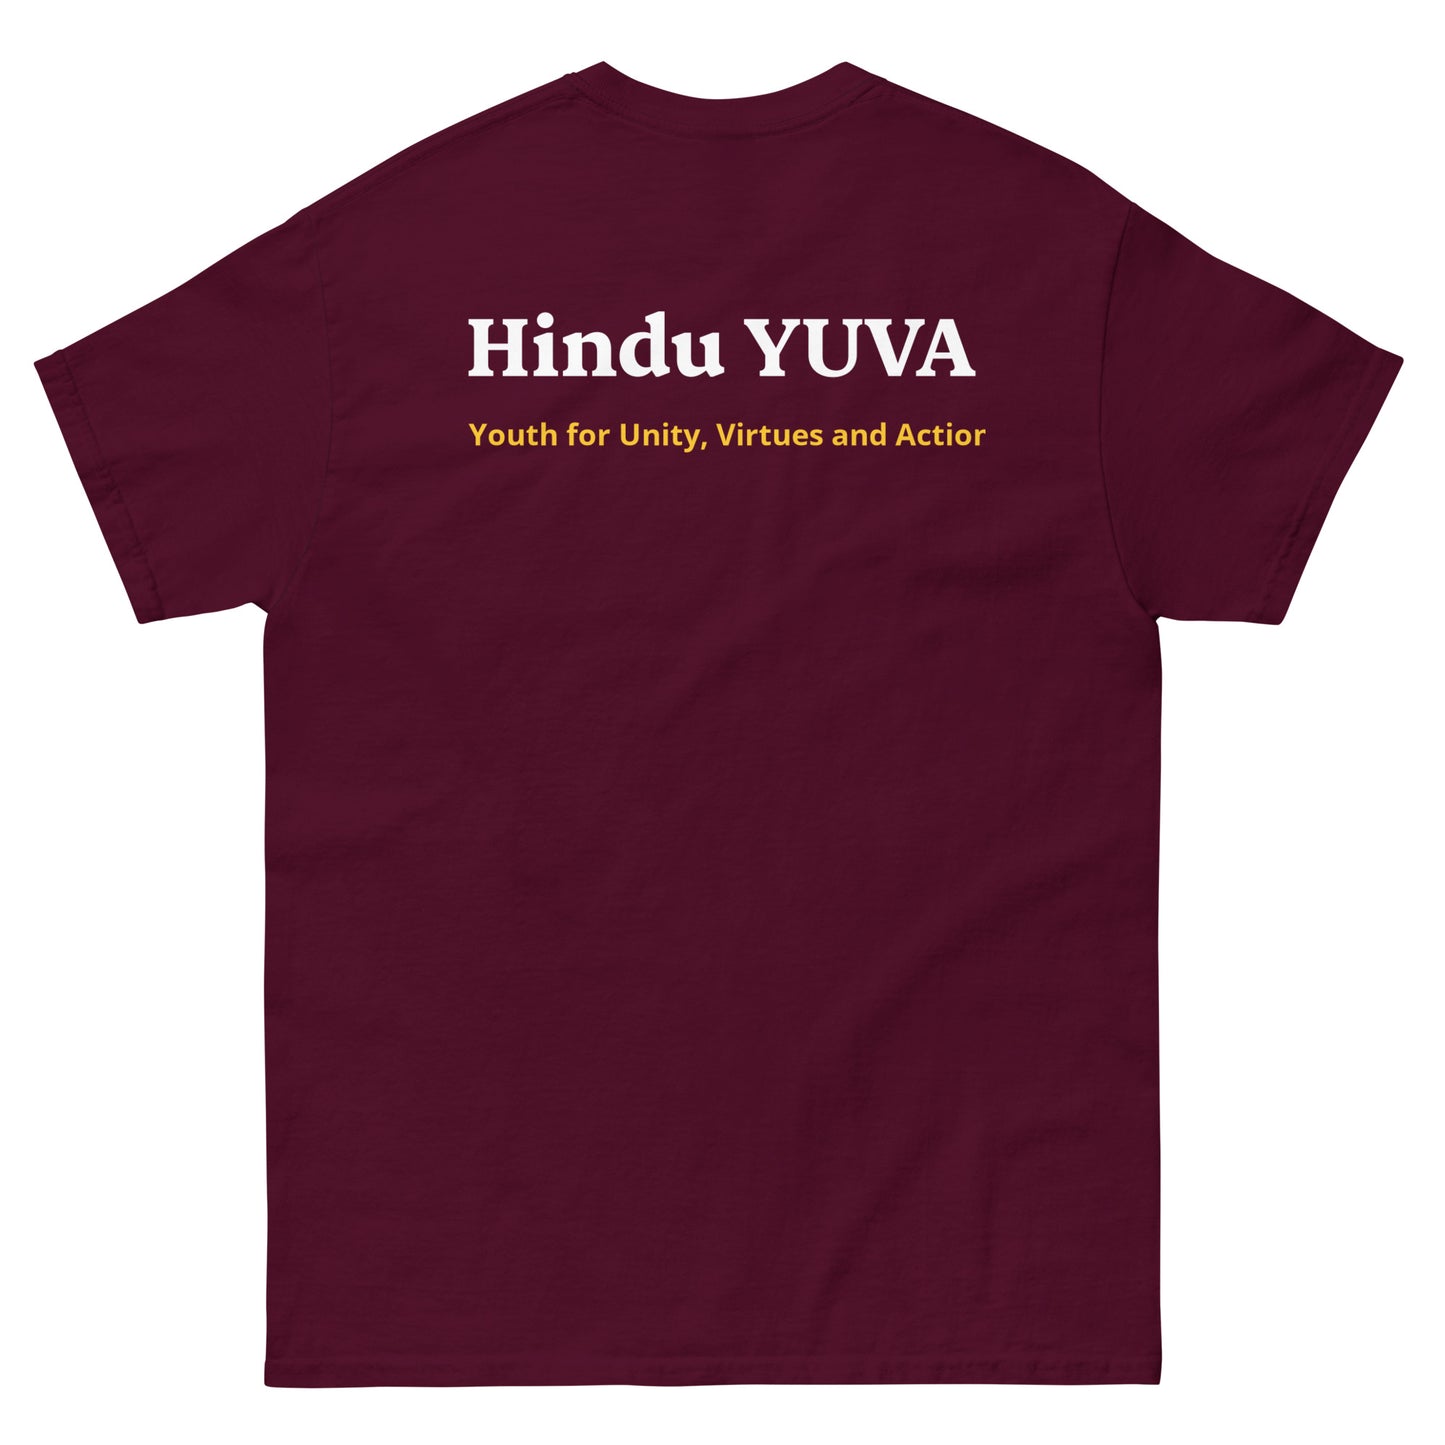 Hindu YUVA T-shirt